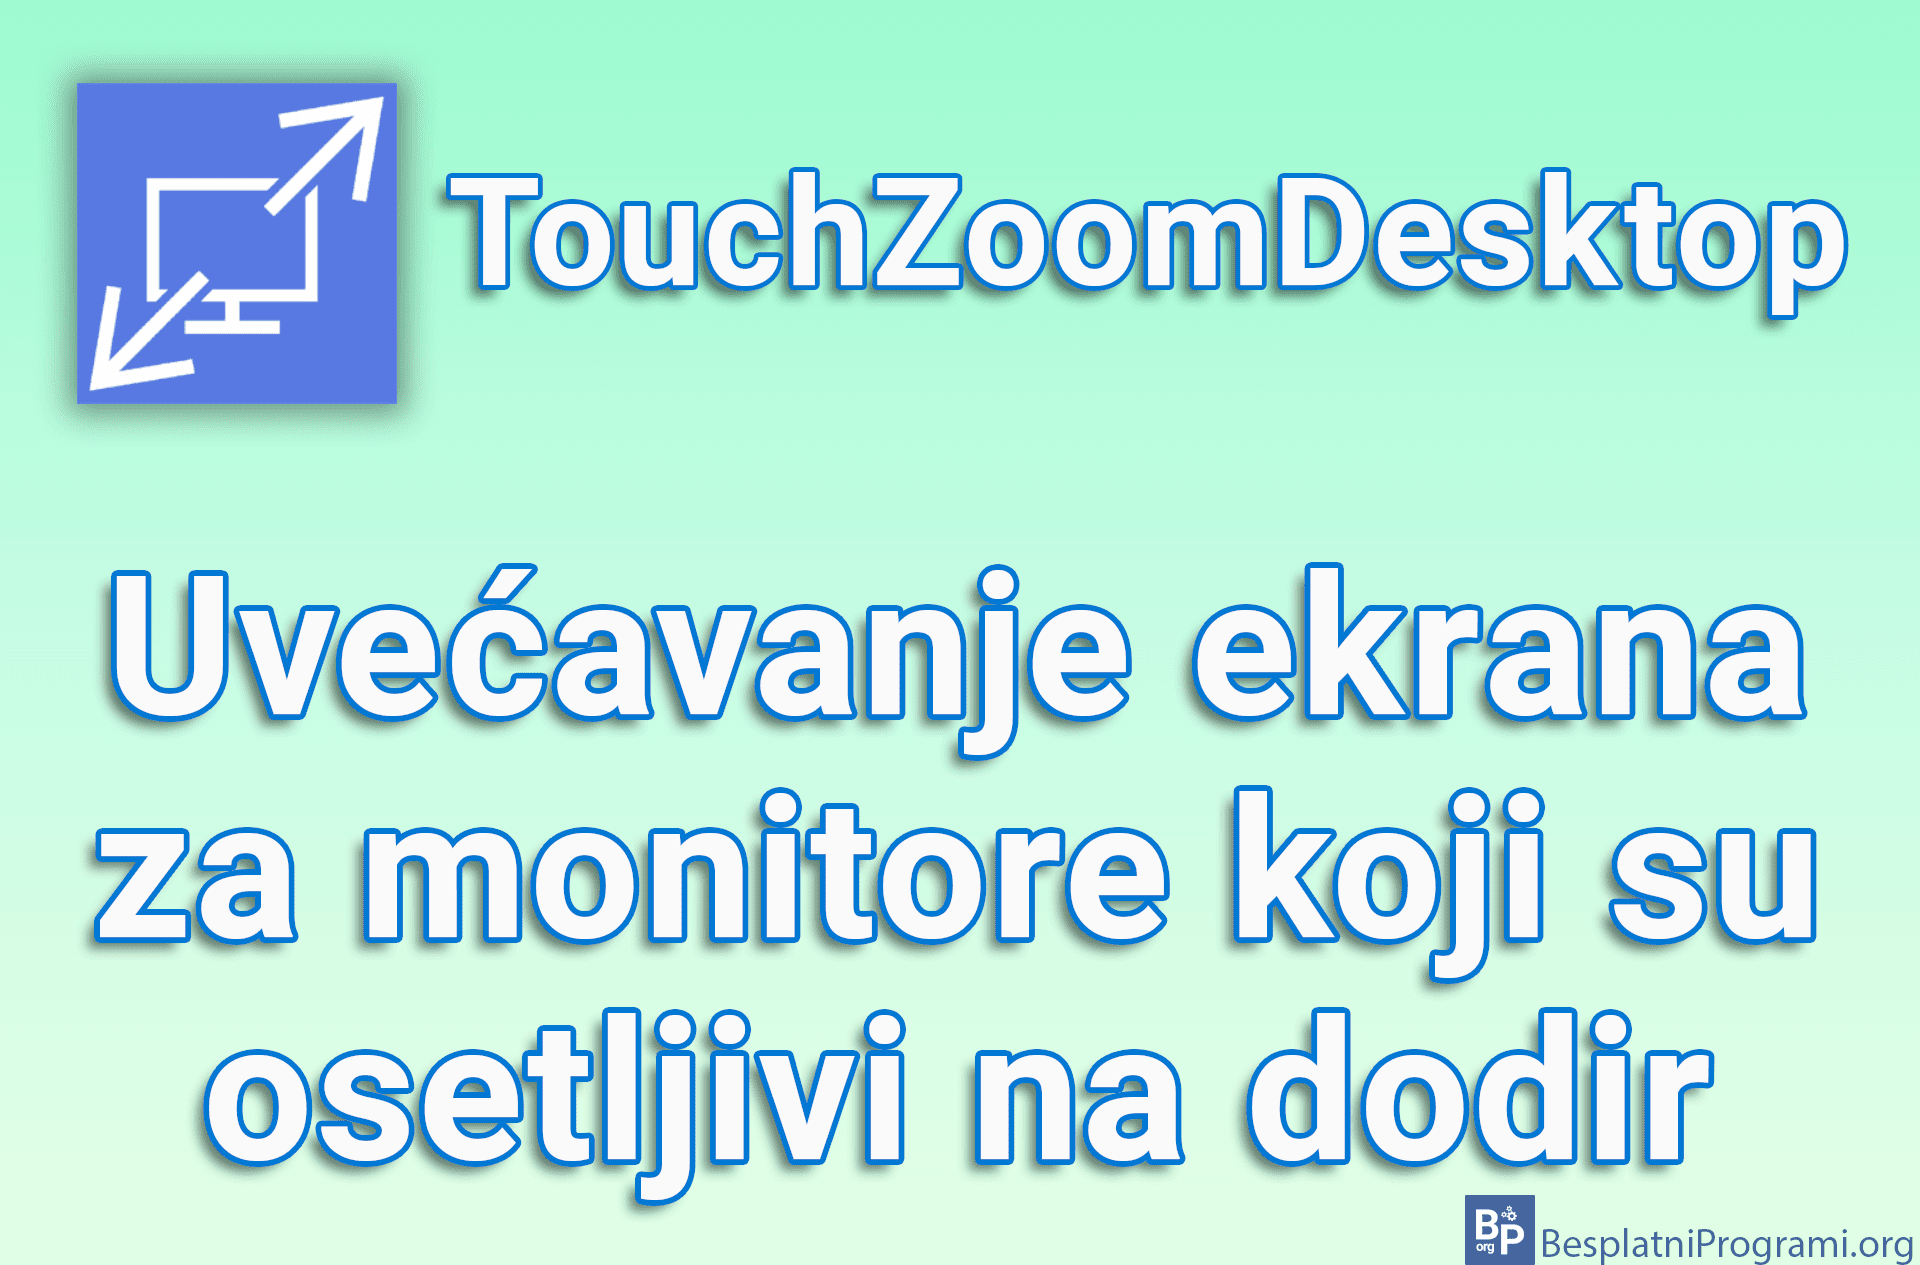 TouchZoomDesktop – Uvećavanje ekrana za monitore koji su osetljivi na dodir